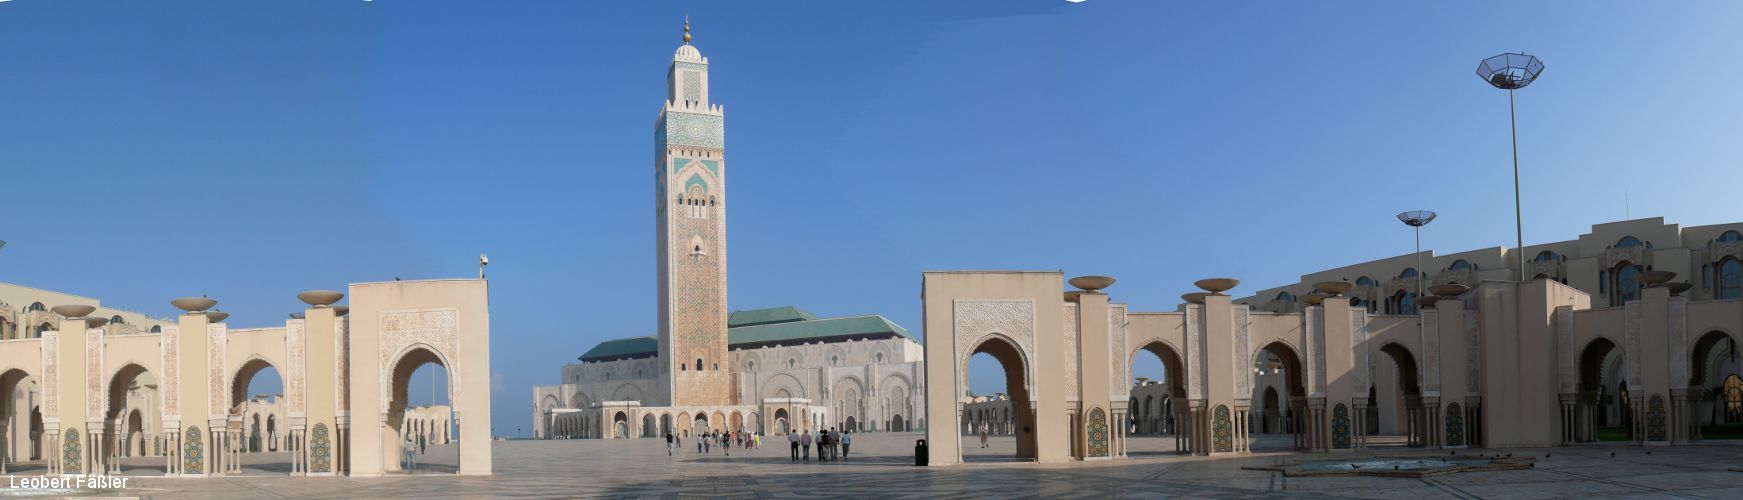 01_Casablanca_Moschee